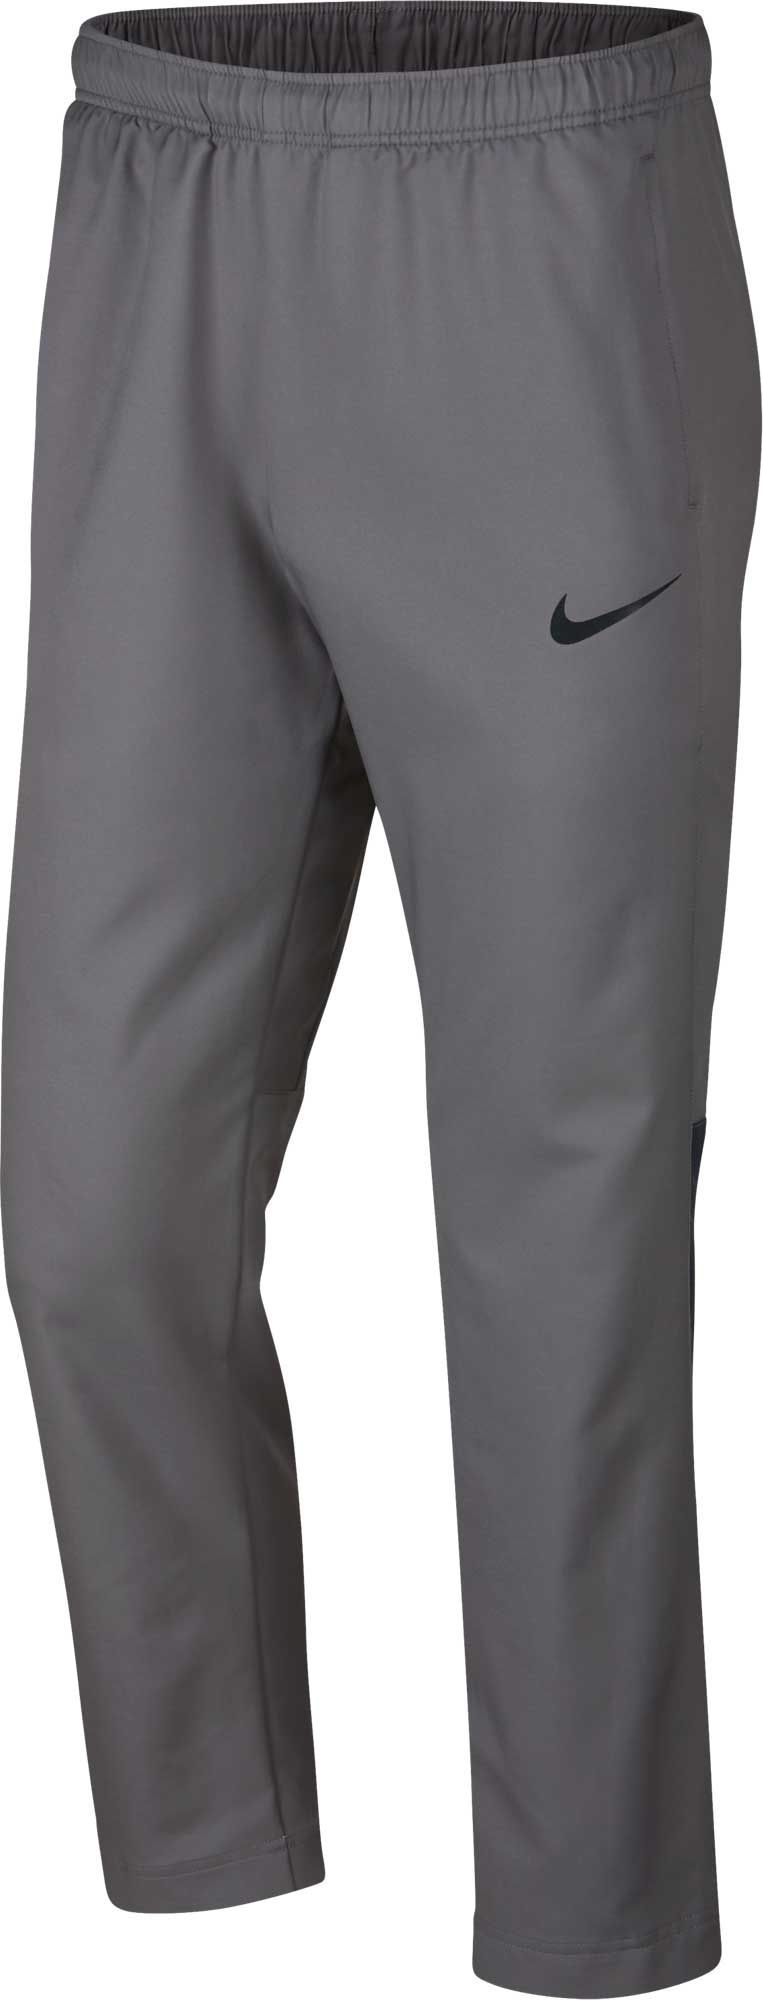 Men's Athletic Pants | Best Price Guarantee at DICK'S